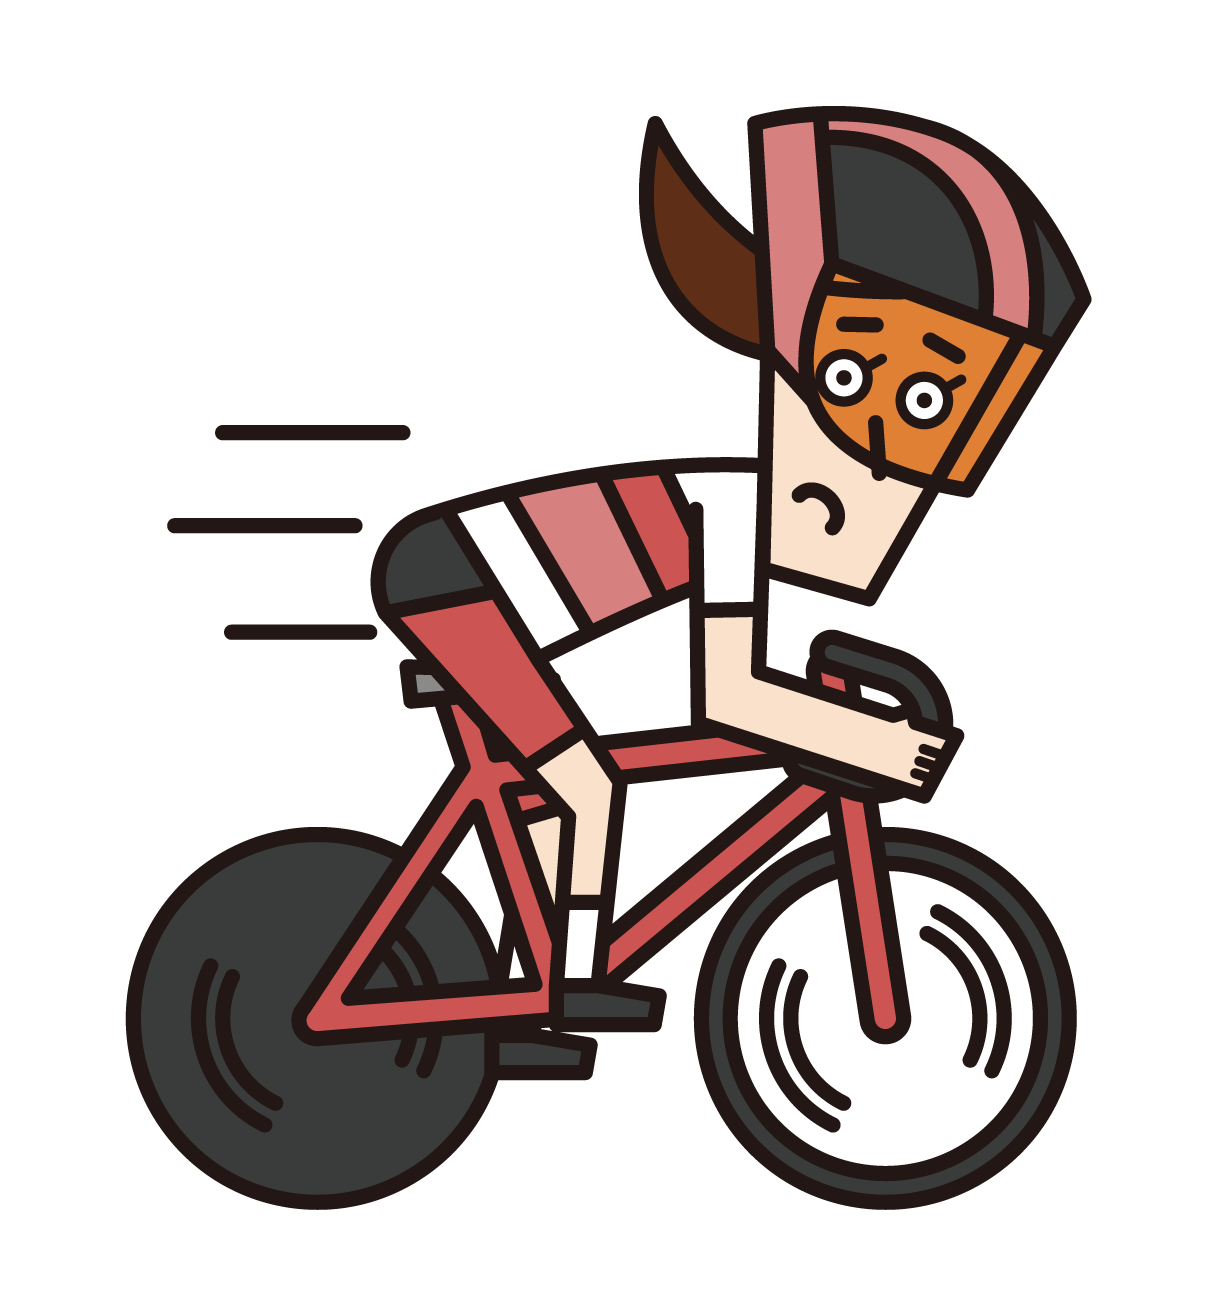 スプリンター（自転車トラック競技の女性選手）のイラスト